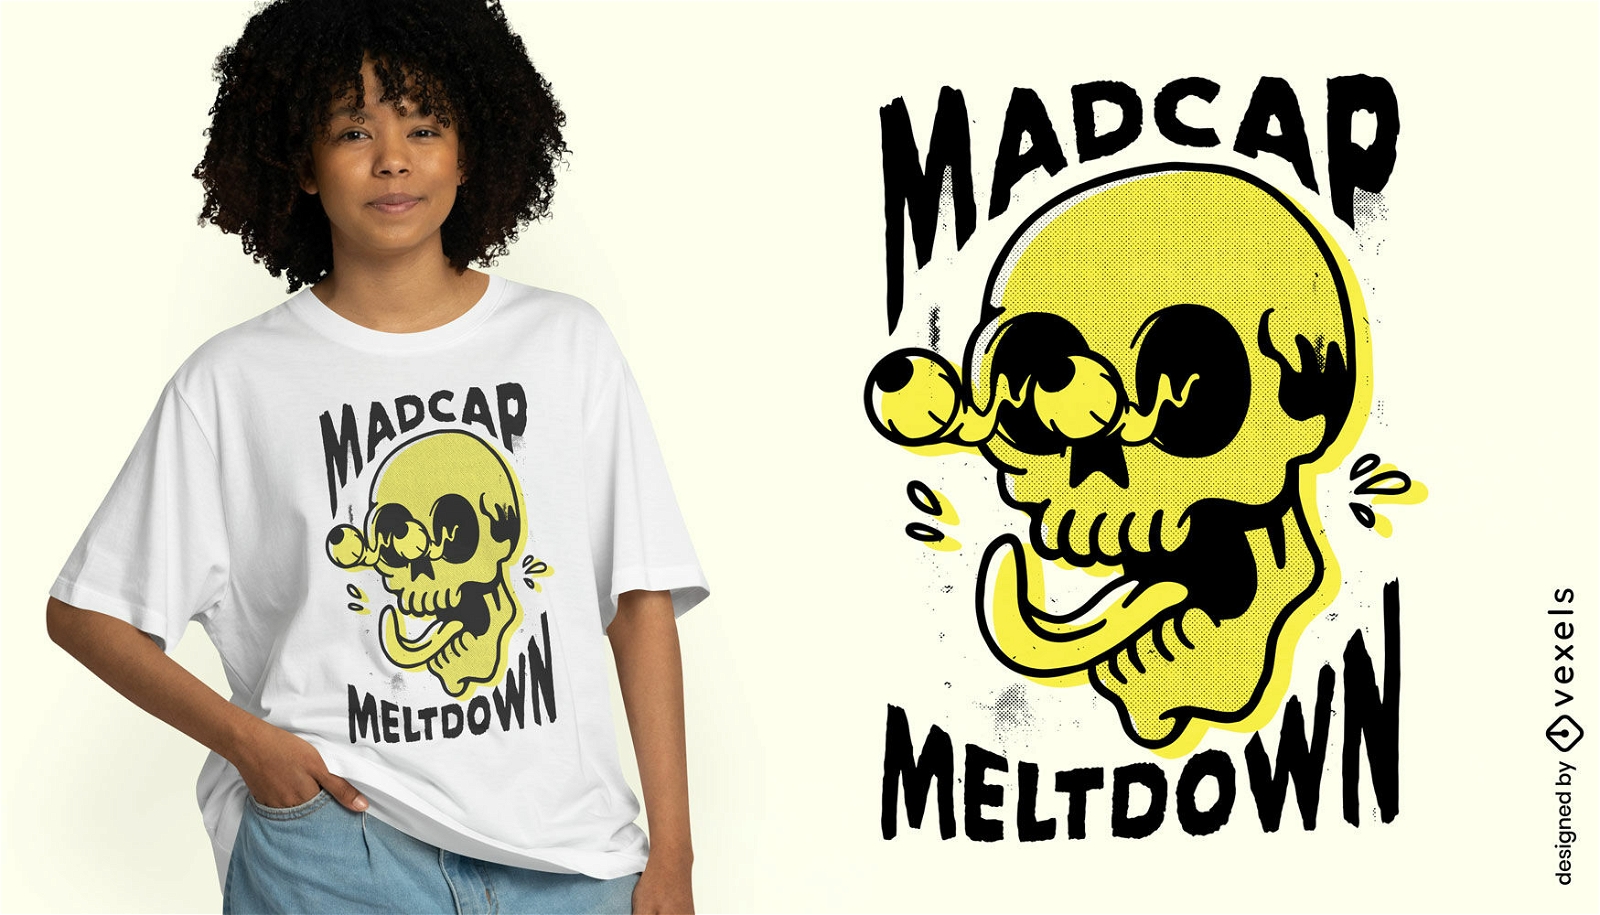 Dise?o de camiseta de calavera Meldown Madcap